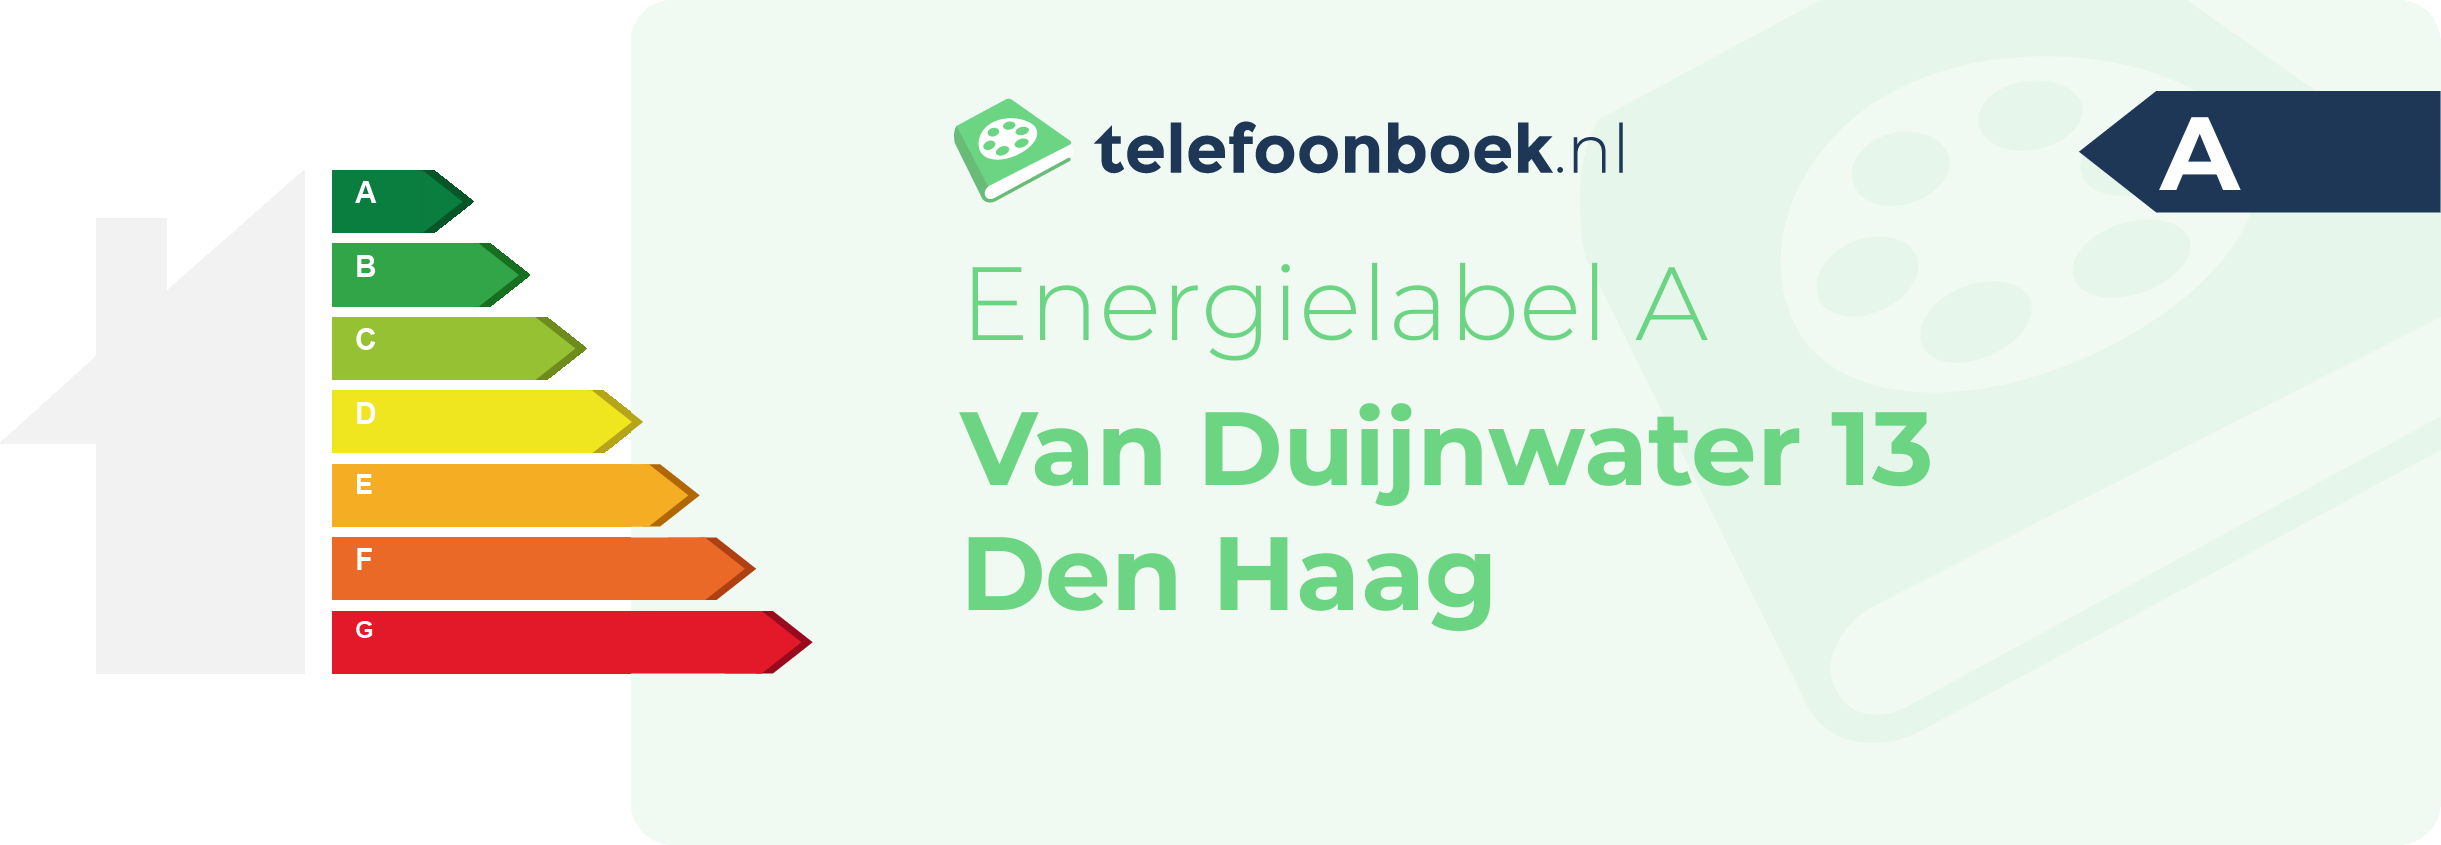 Energielabel Van Duijnwater 13 Den Haag